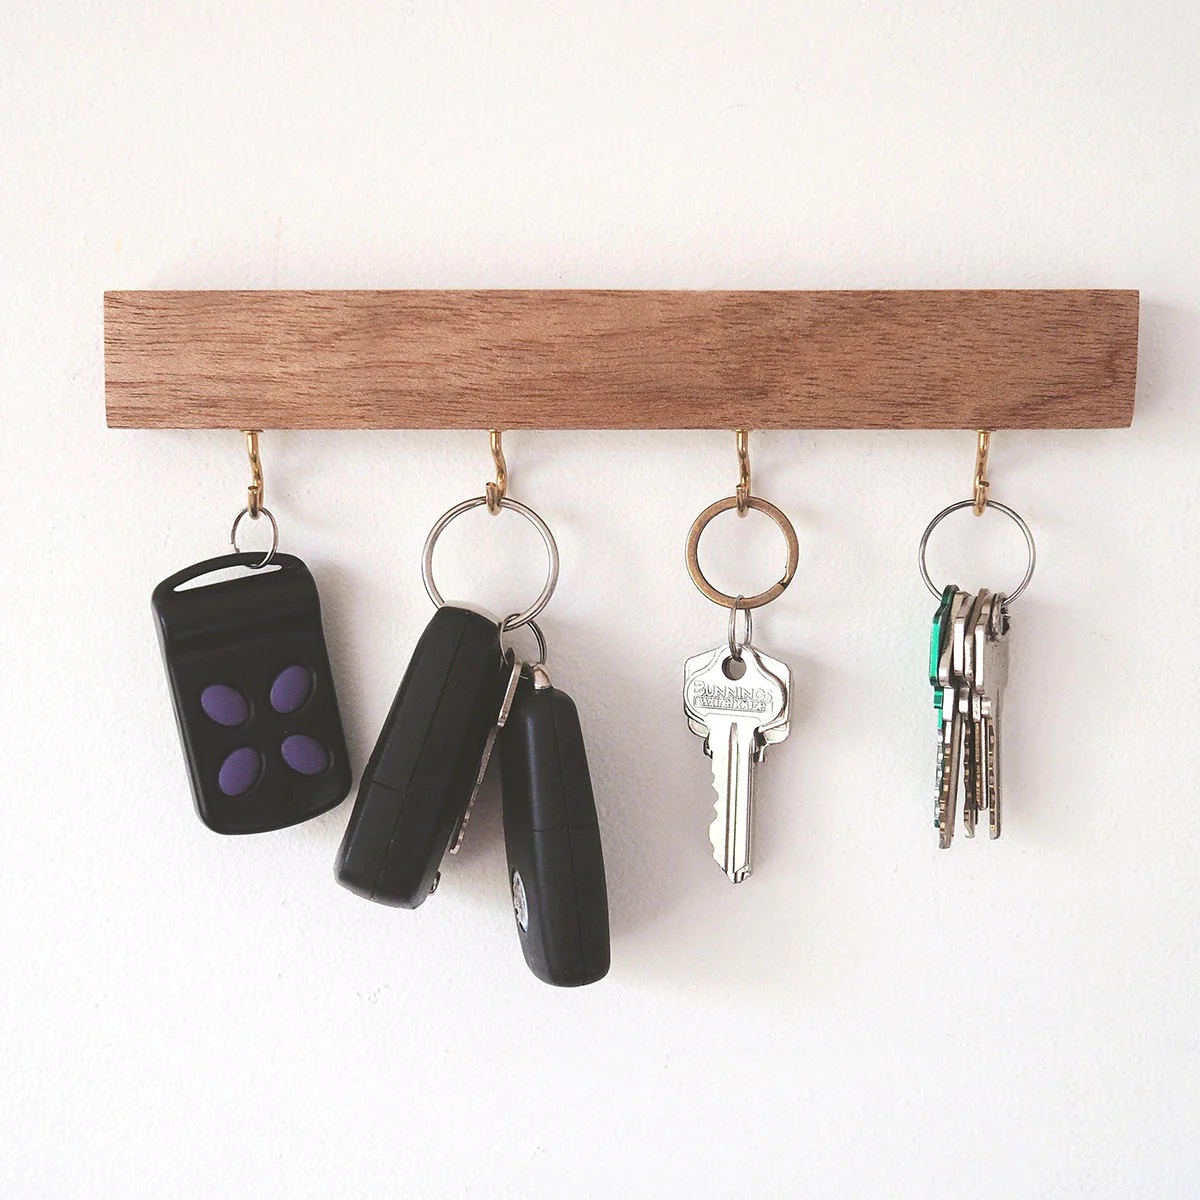  کلیدهای خود را با جا کلیدی سازماندهی کنید